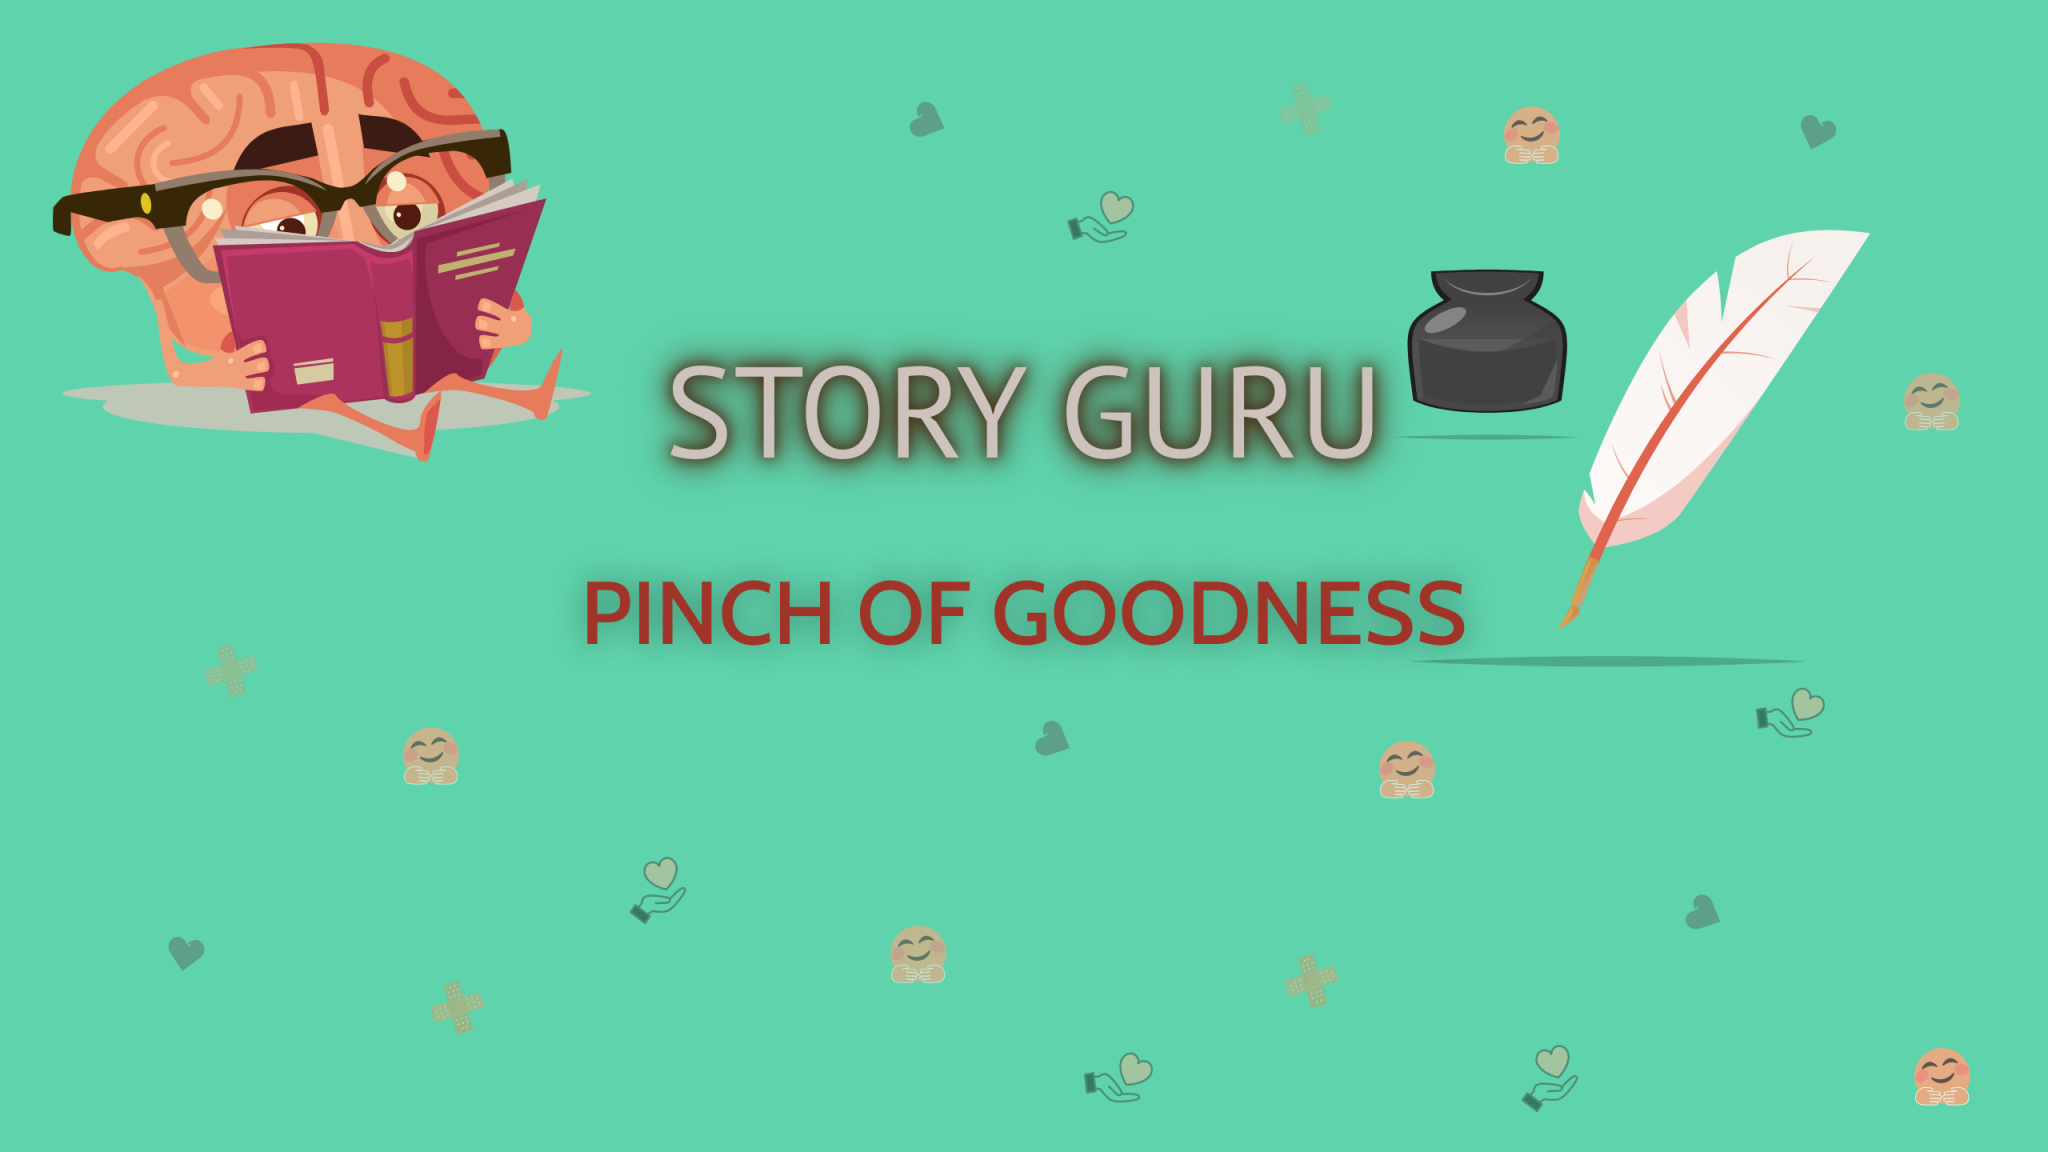 Story guru 1